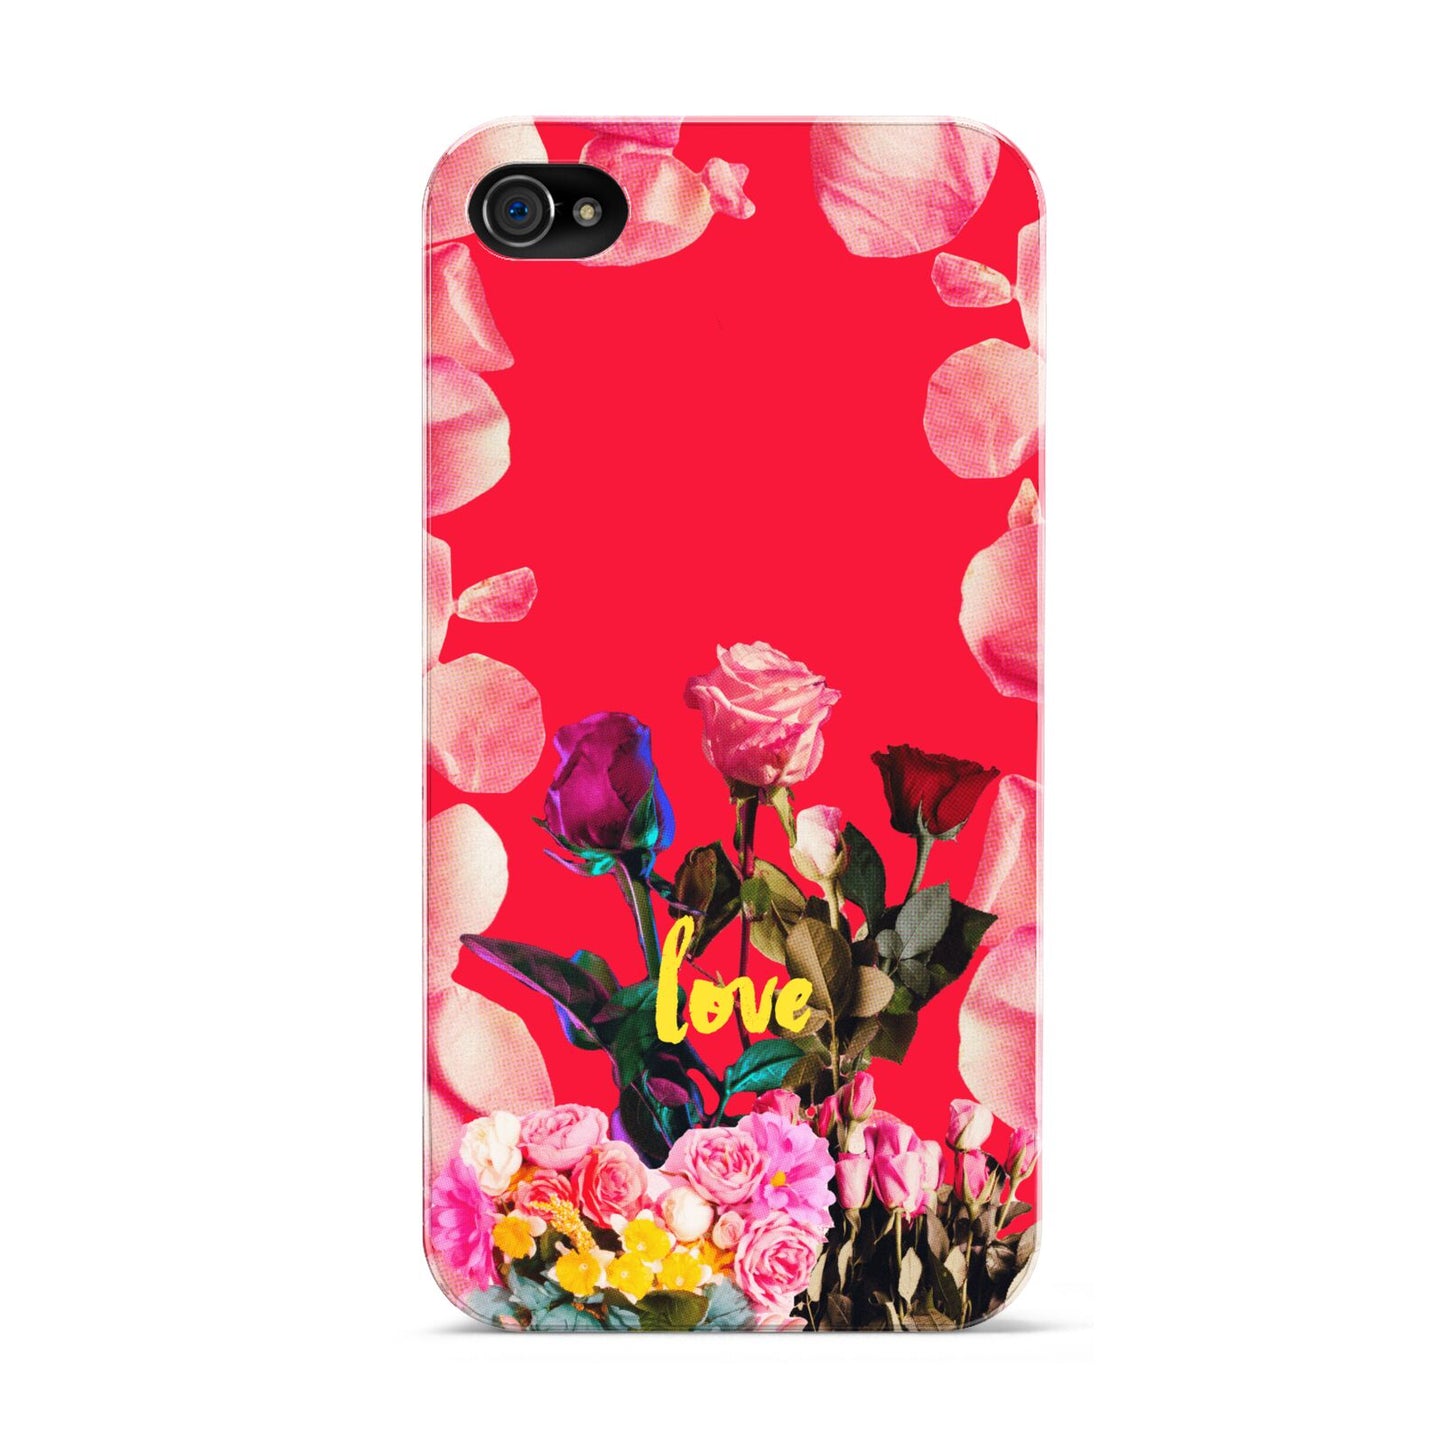 Retro Floral Valentine Apple iPhone 4s Case